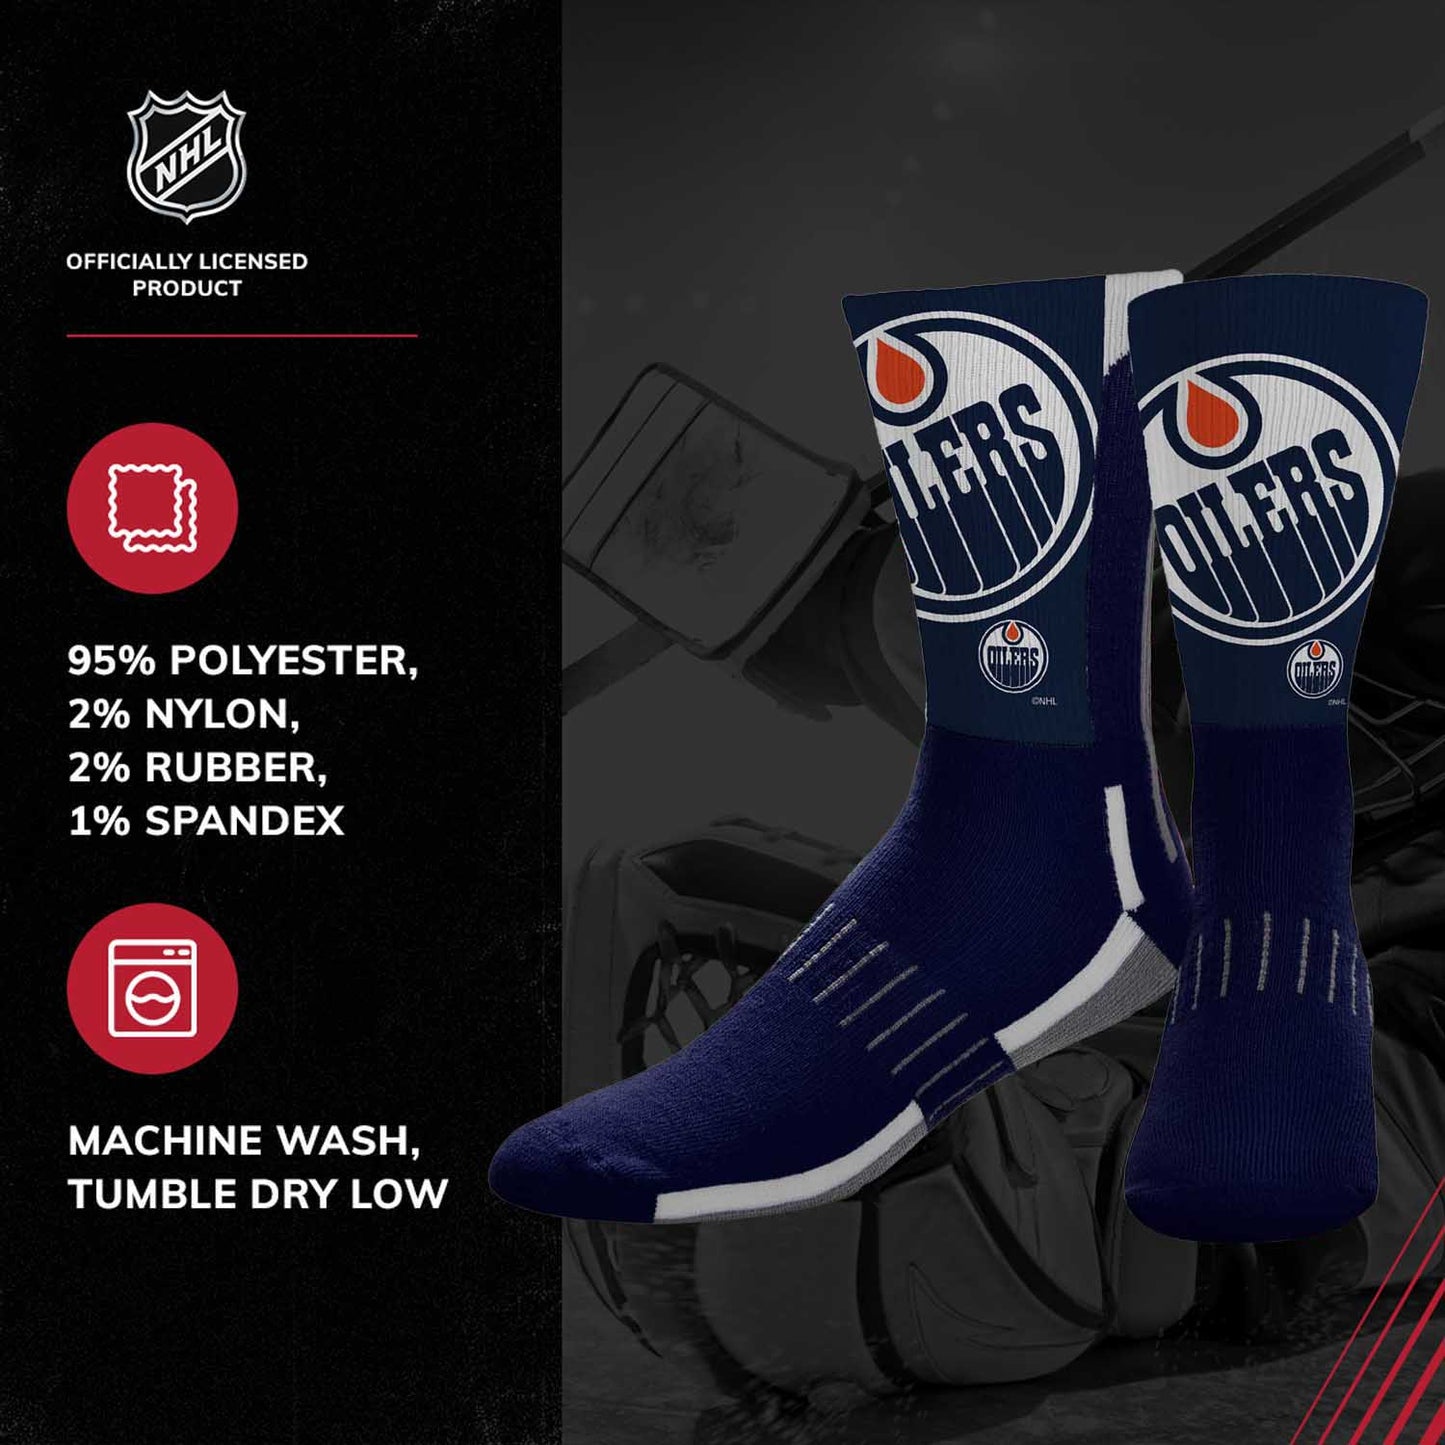 Edmonton Oilers Adult NHL Zoom Curve Team Crew Socks - Navy